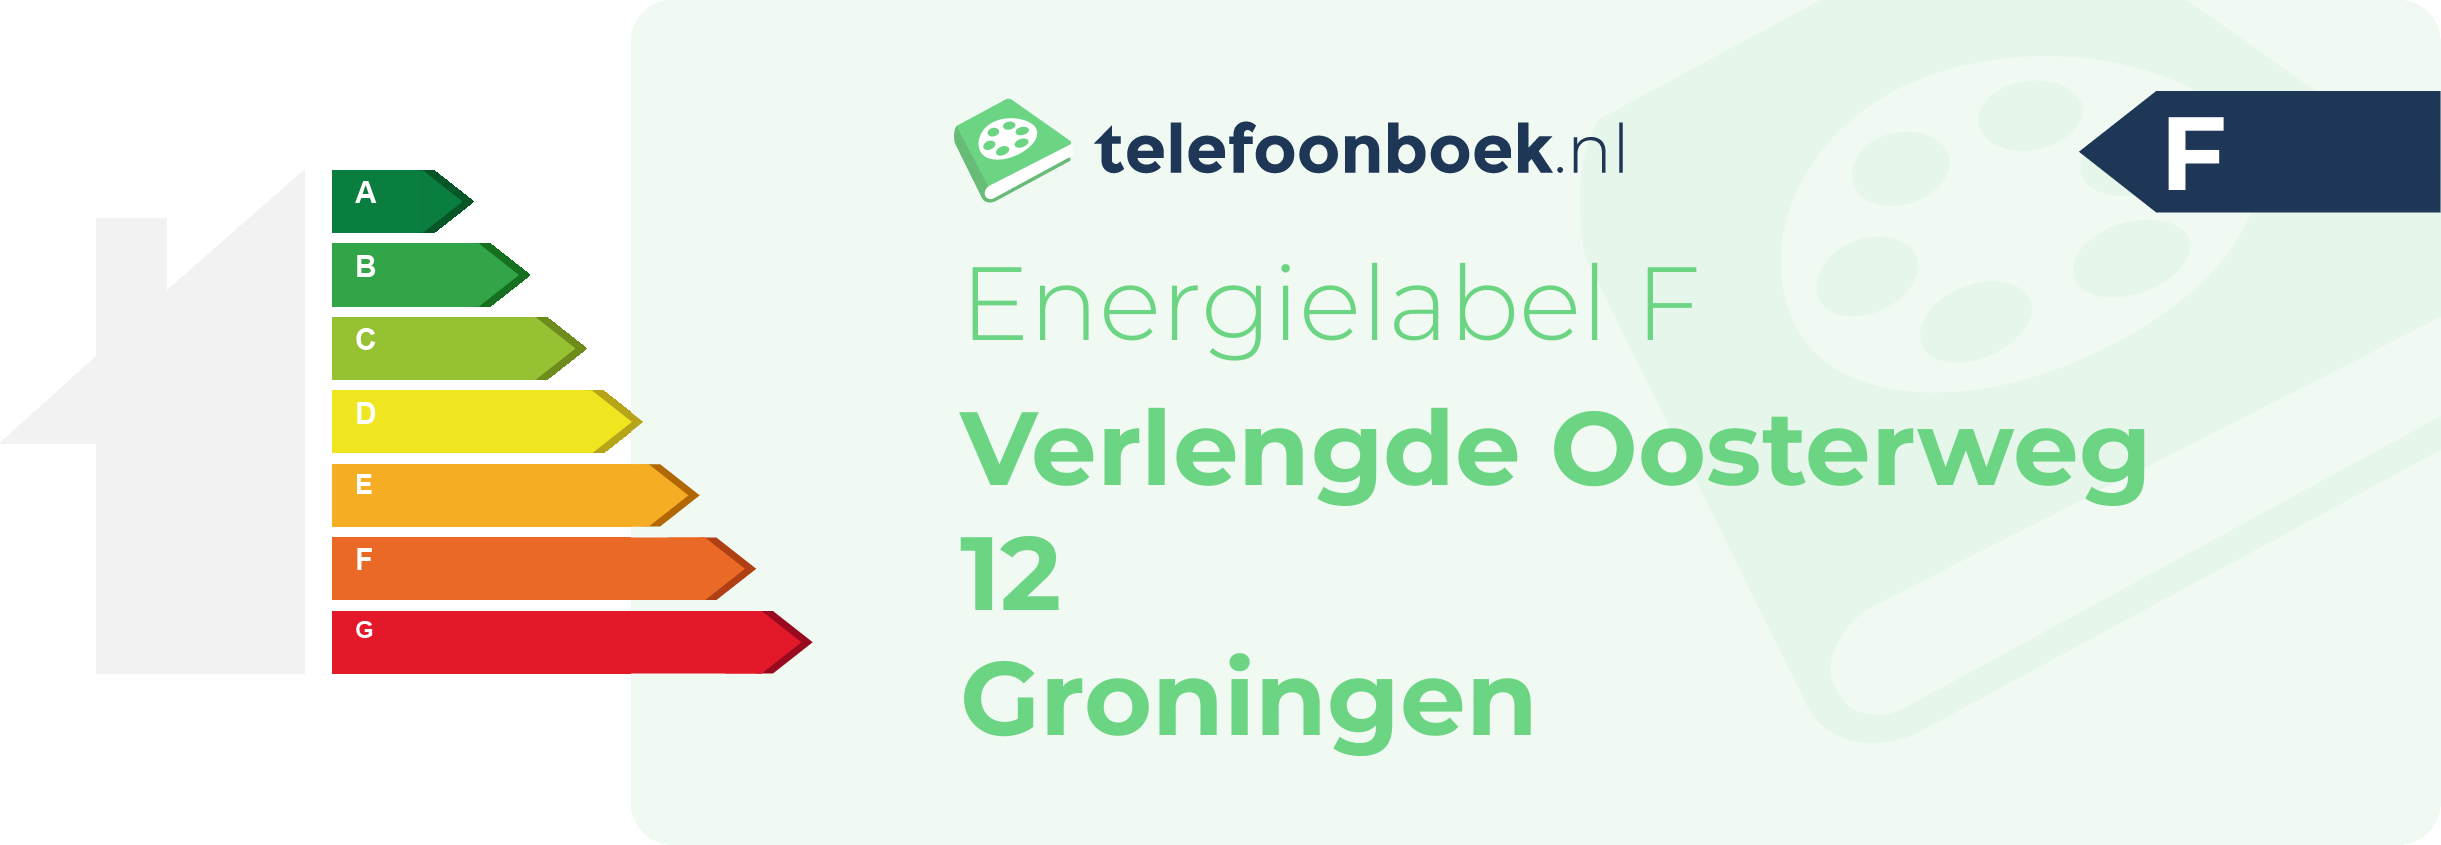 Energielabel Verlengde Oosterweg 12 Groningen